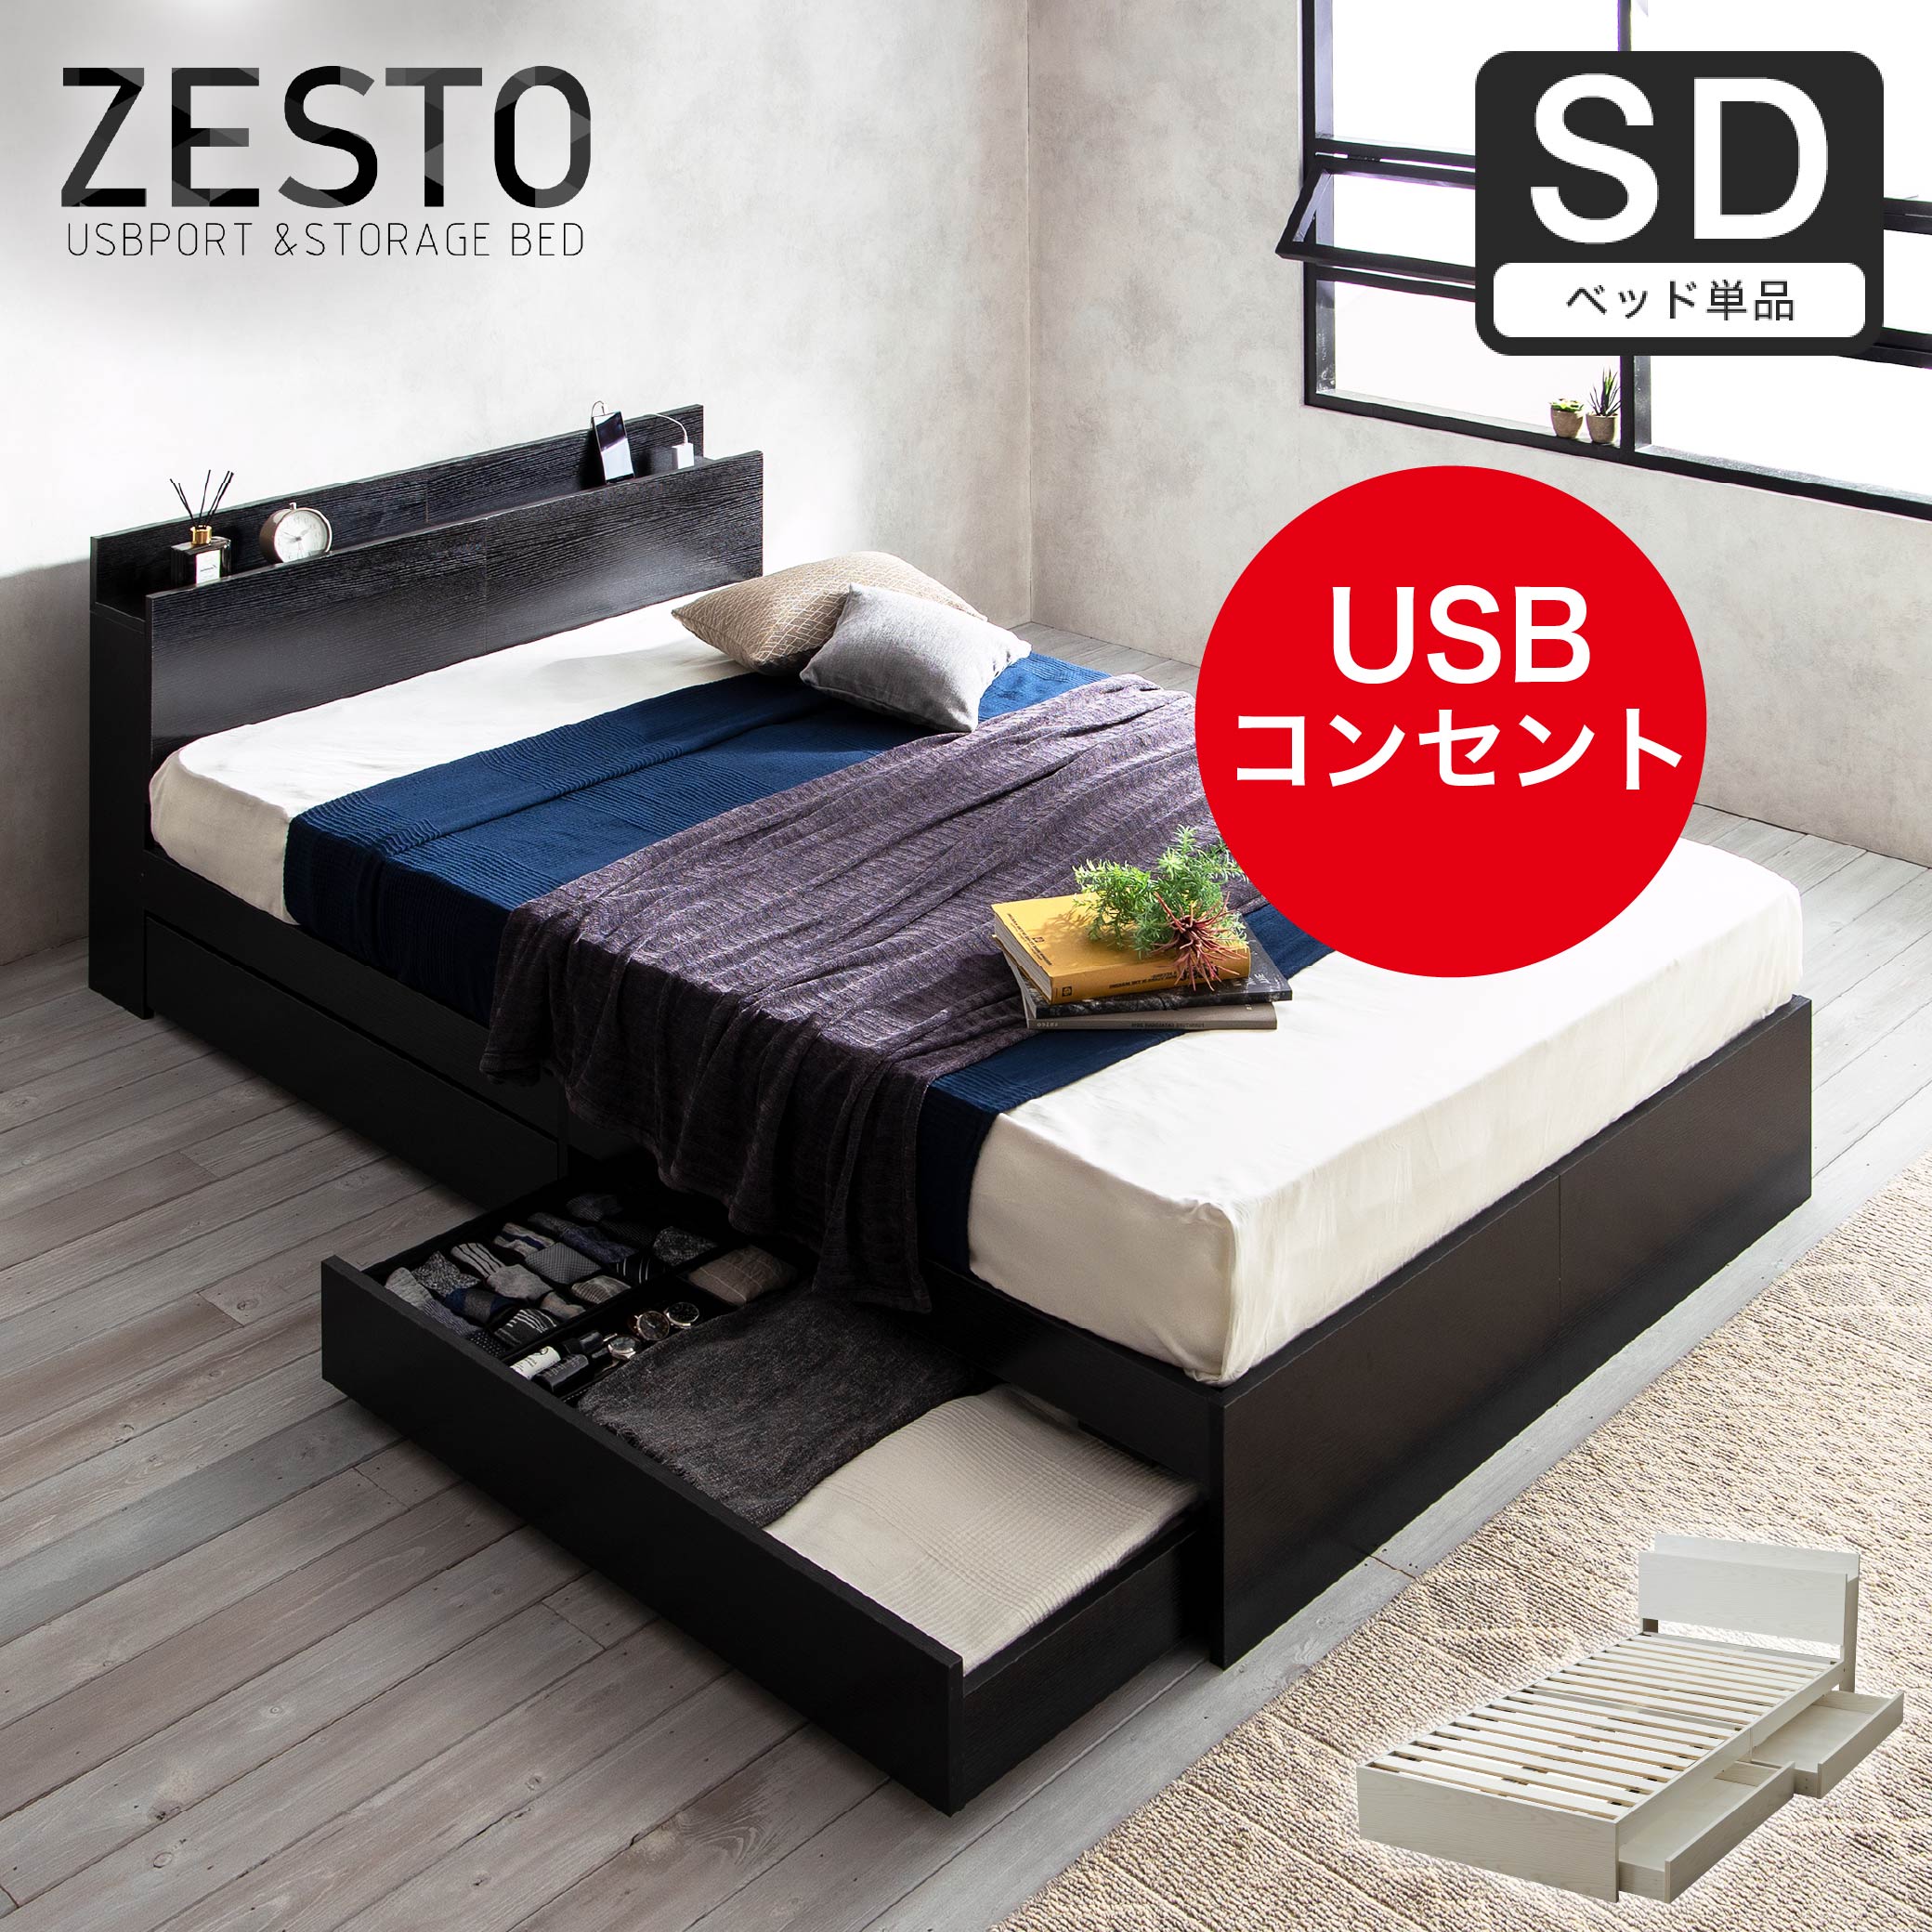 ベッド 収納 セミダブルベッド フレームのみ 収納付き USBコンセント付き zesto ゼスト セミダブル すのこベッド 引き出し付きベッド  zesto 木製ベッド | ベッド・マットレス通販専門店 ネルコンシェルジュ neruco